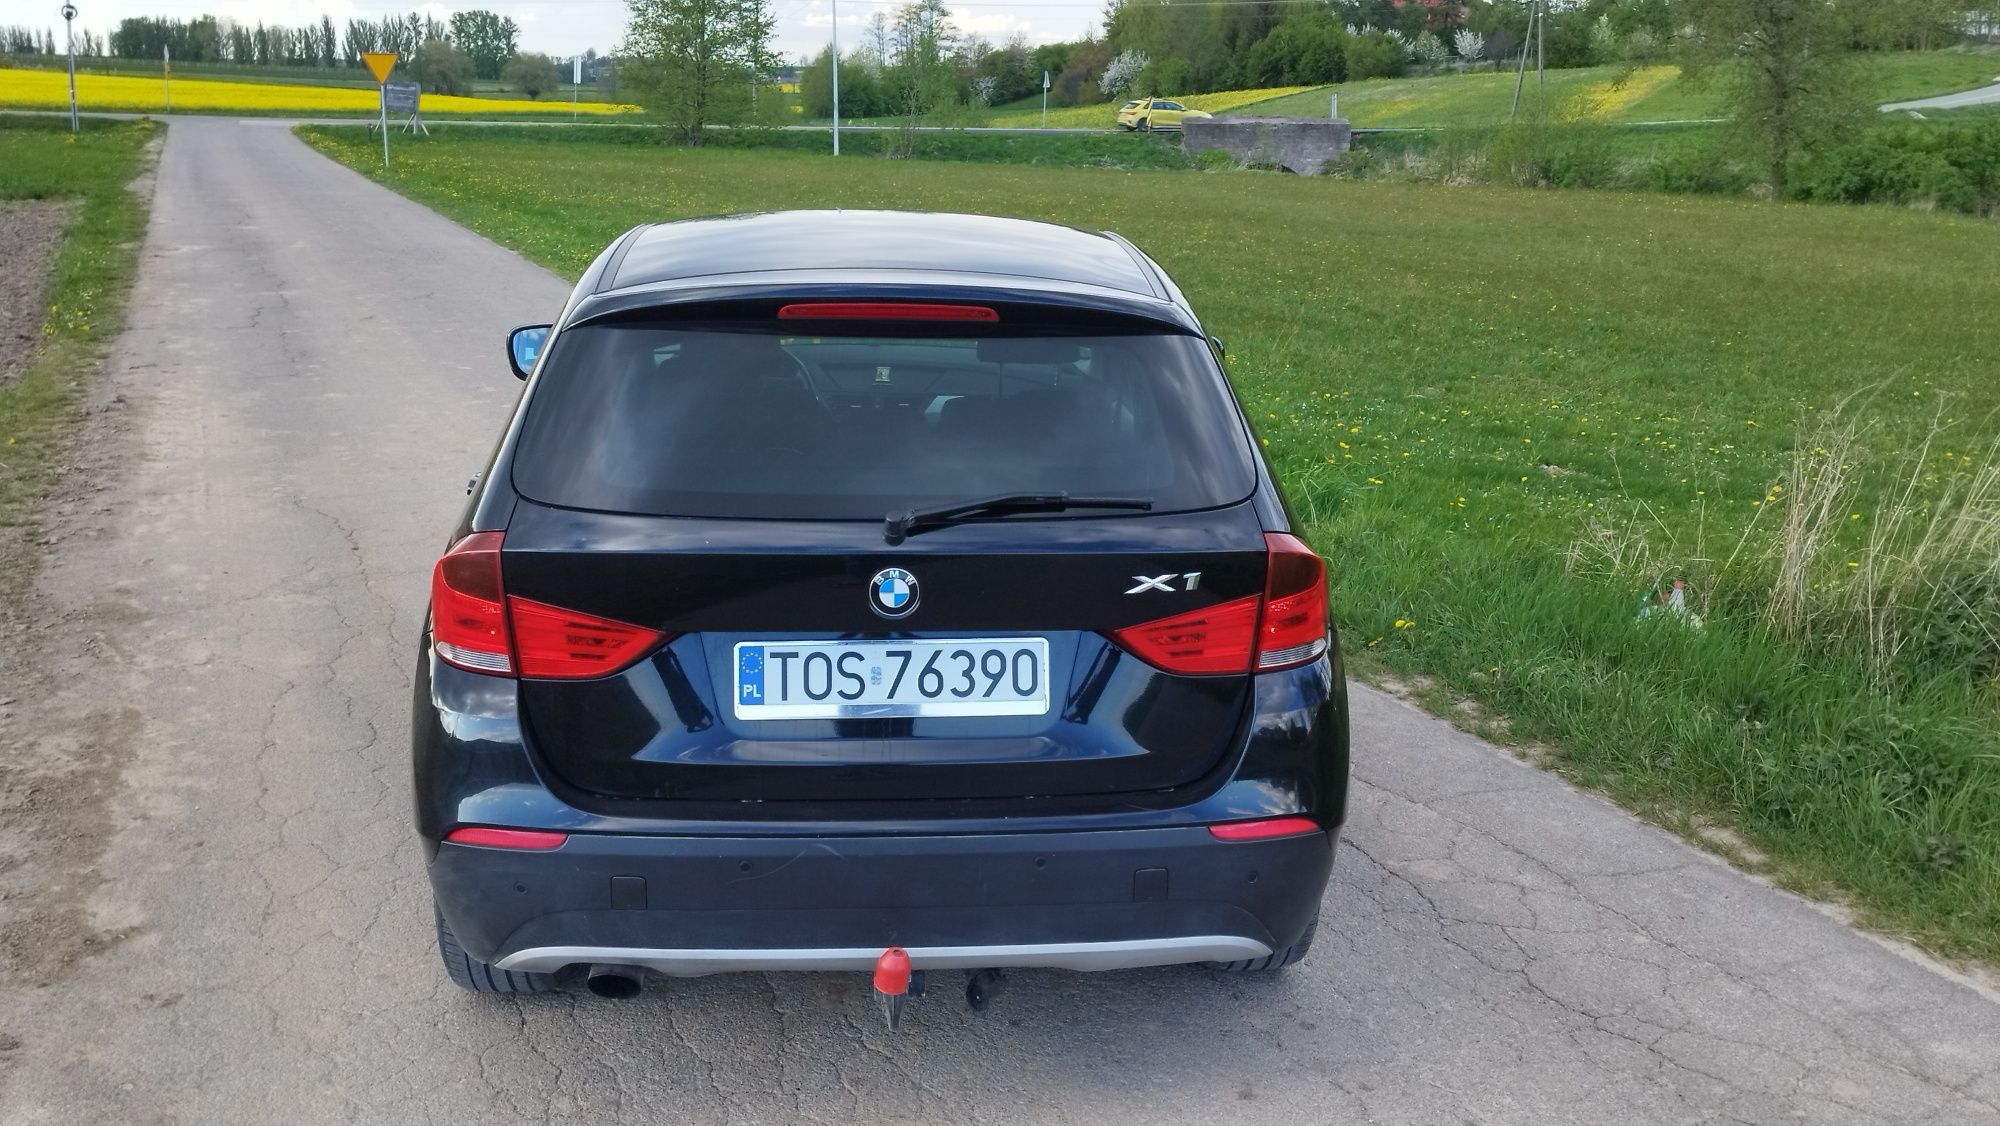 BMW X1 E84 2.0d 143KM Czarny Metalik 2012 Zarejestrowana w Kraju OC PT